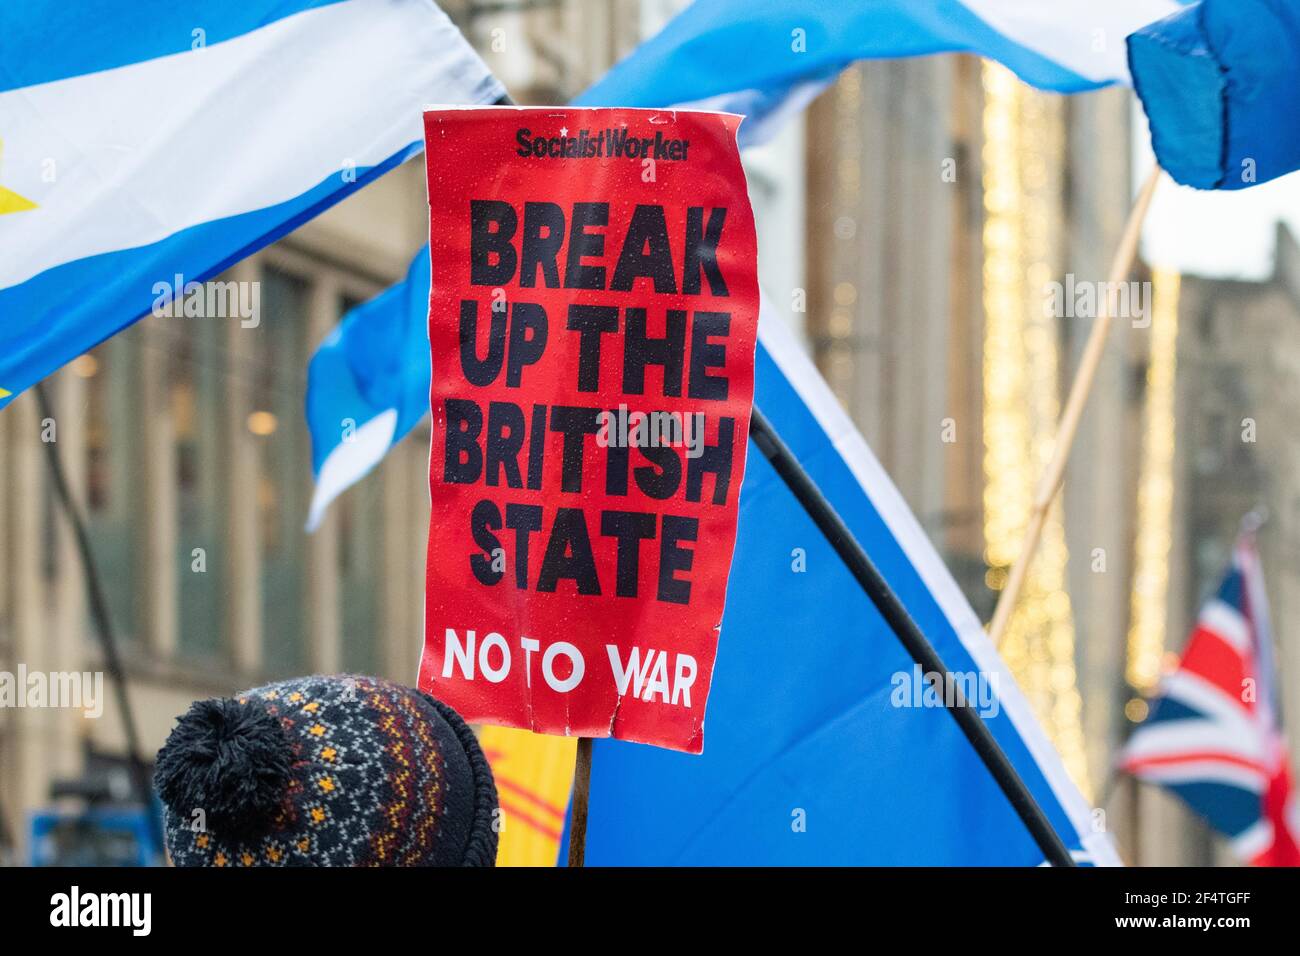 Briser l'État britannique No to War - étiquette des travailleurs socialistes lors de la marche de l'indépendance écossaise, Glasgow, Écosse, Royaume-Uni Banque D'Images